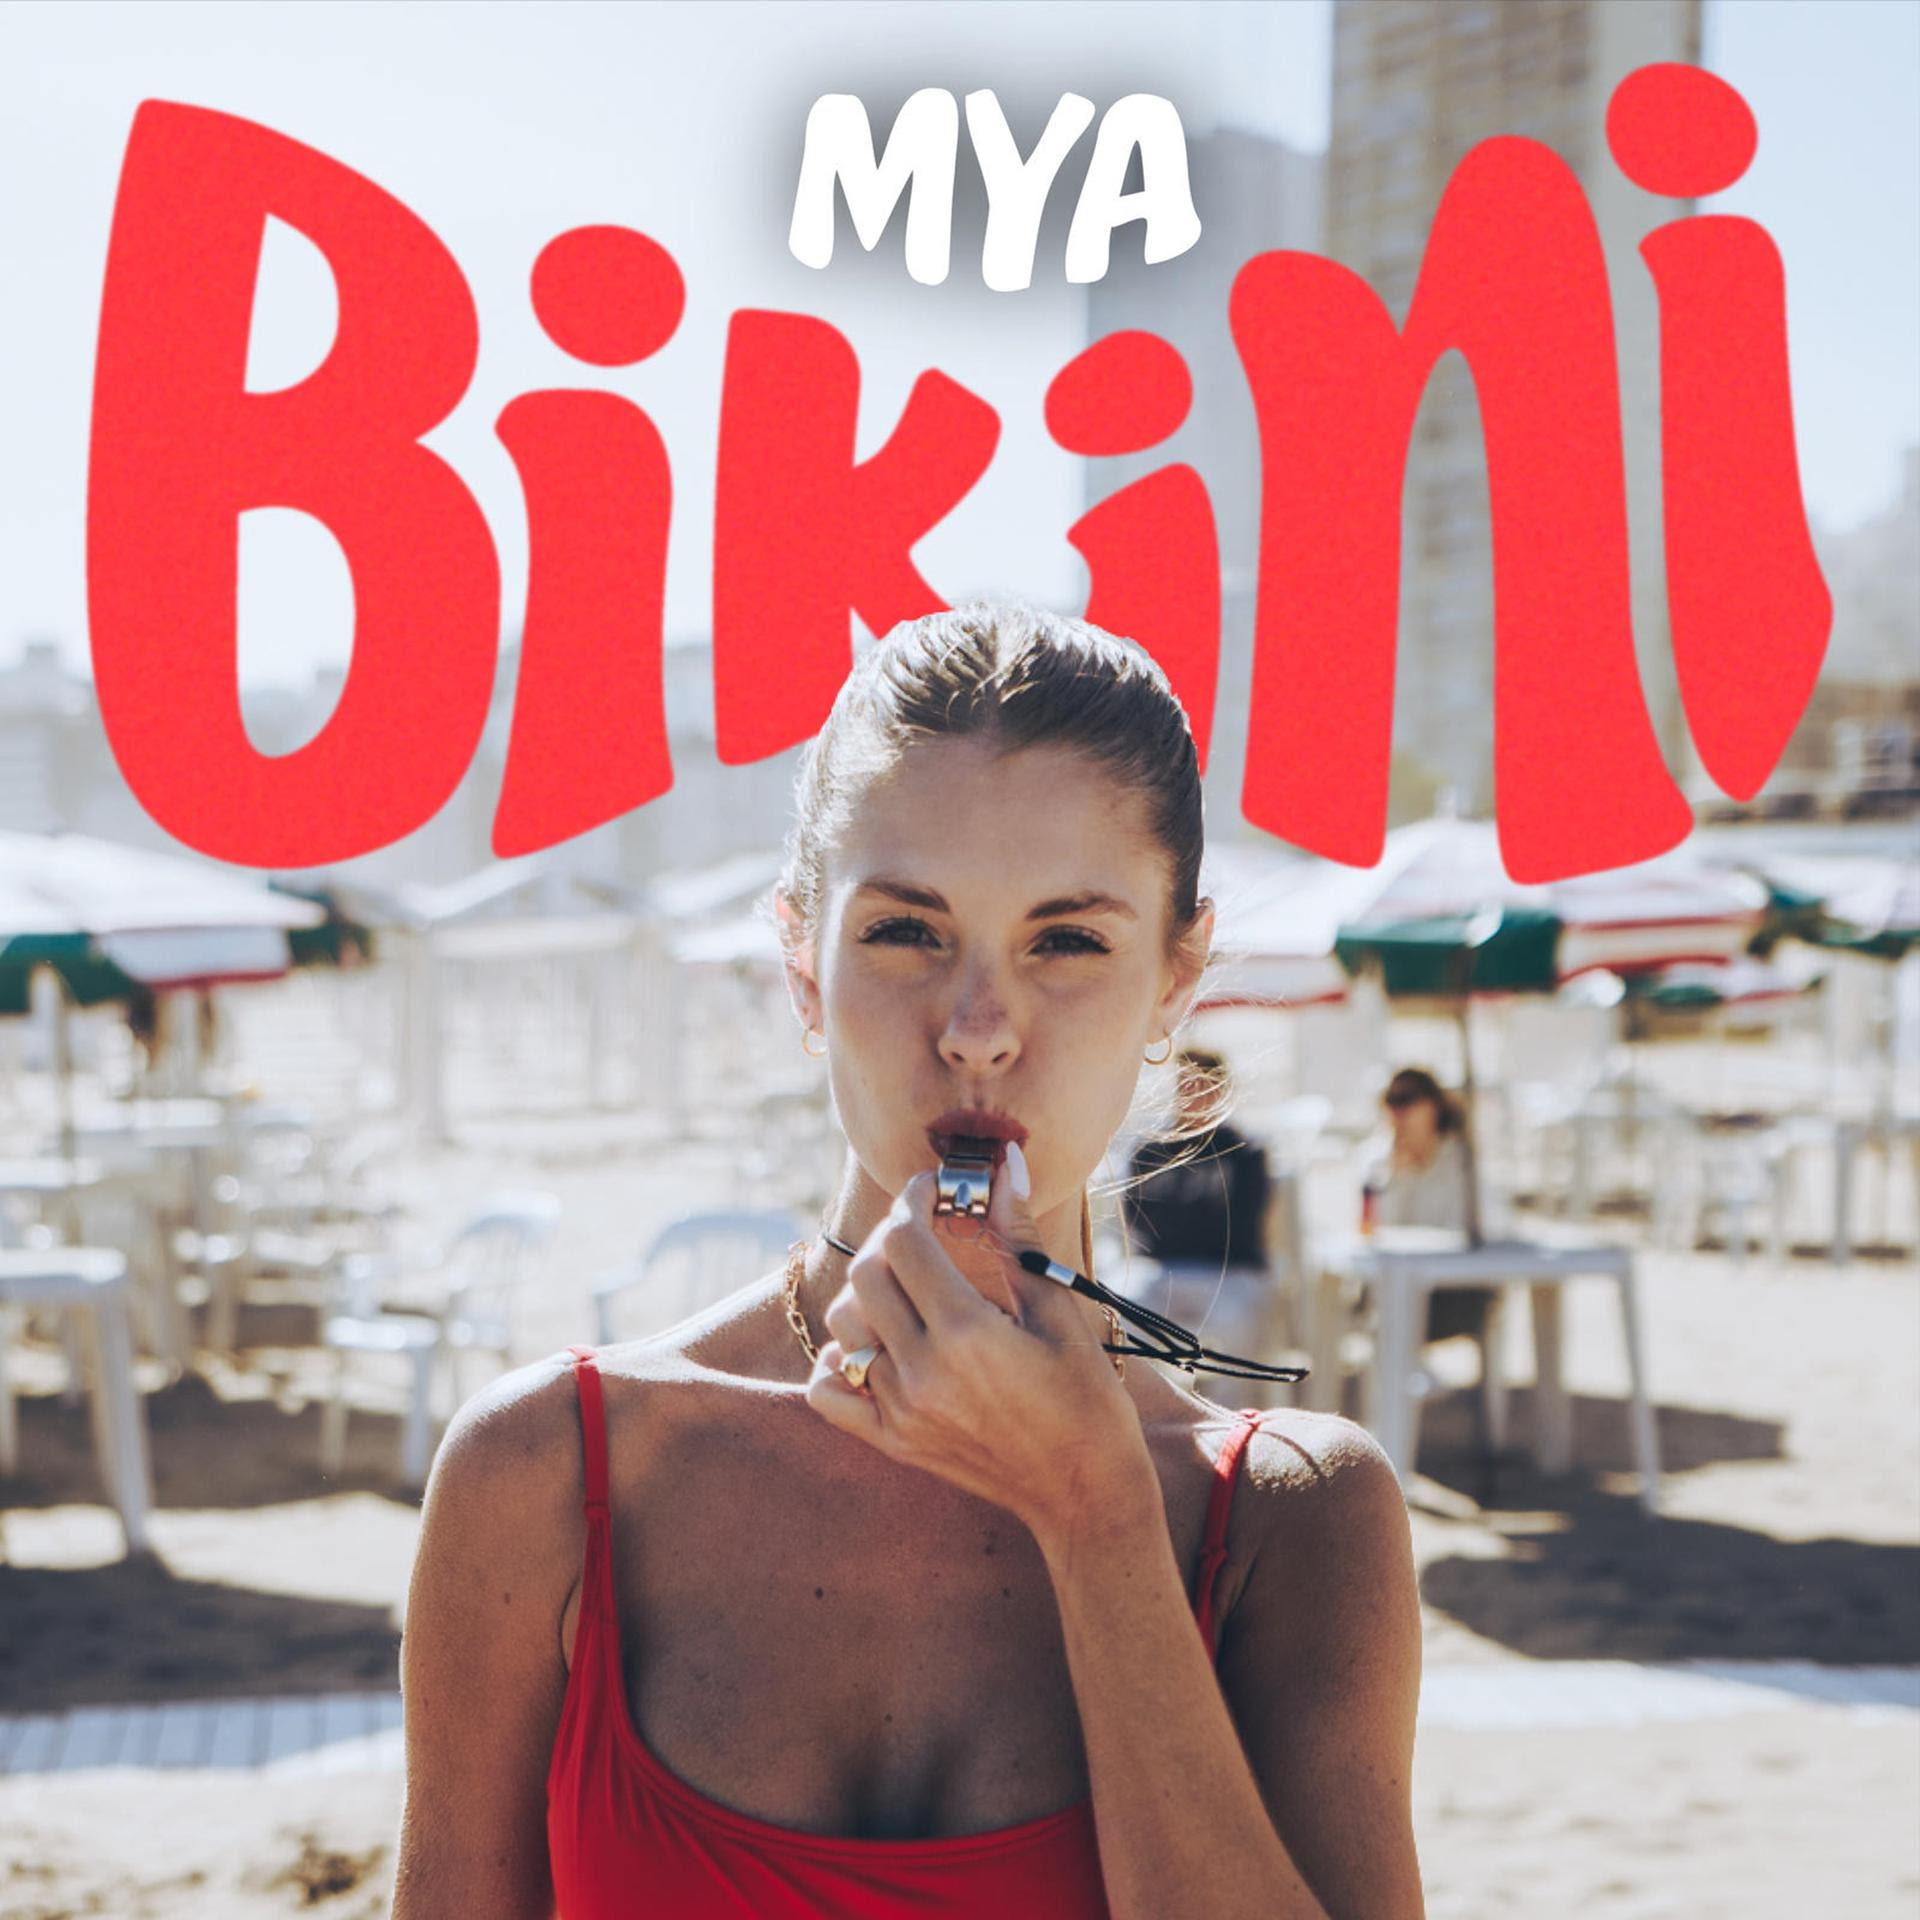 MYA anticipa el verano al sur con“BIKINI”